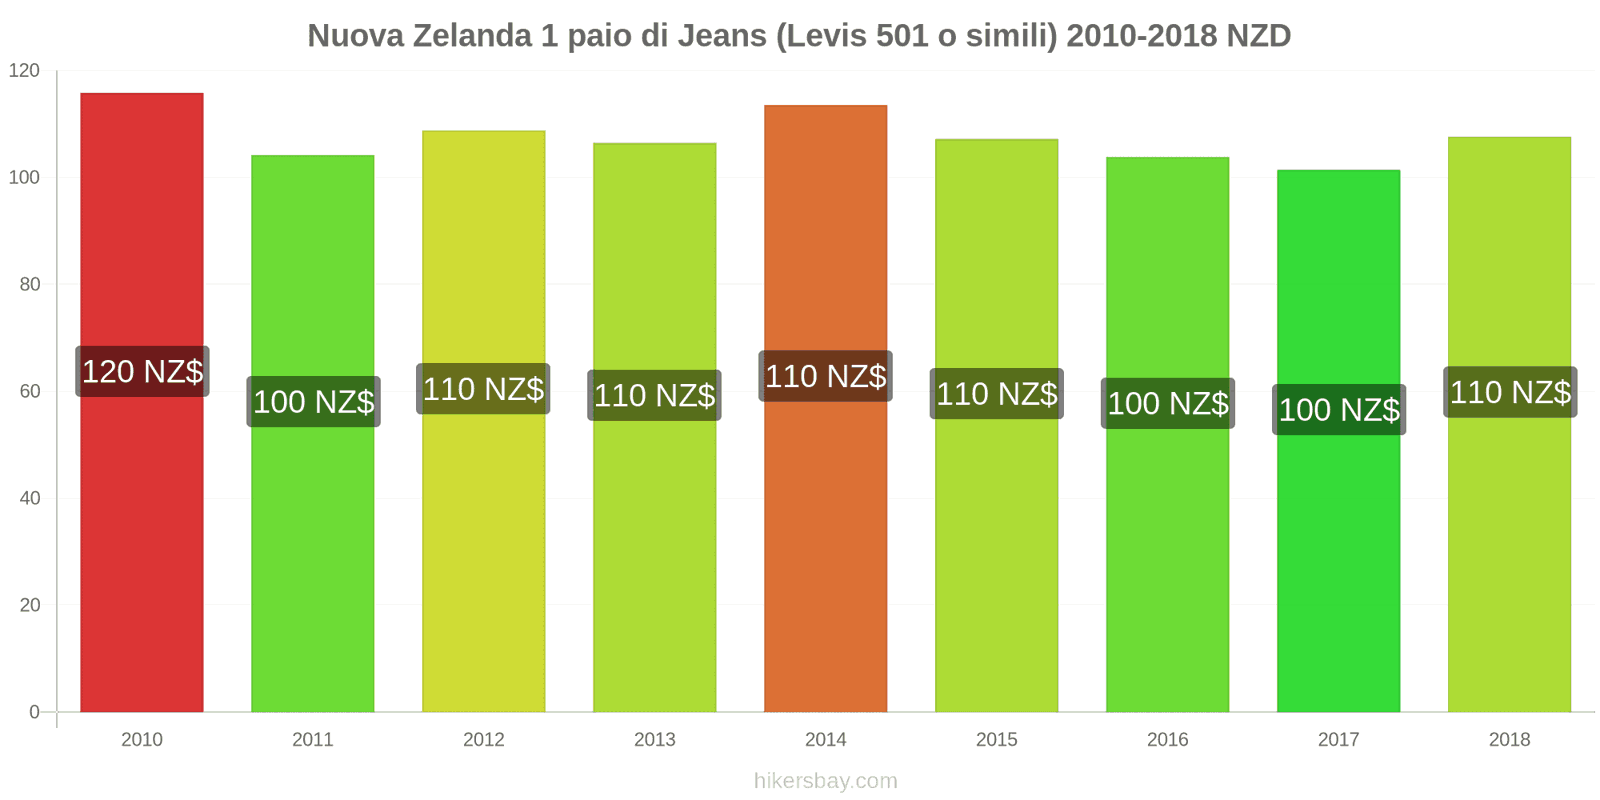 Nuova Zelanda cambi di prezzo 1 paio di jeans (Levis 501 o simili) hikersbay.com